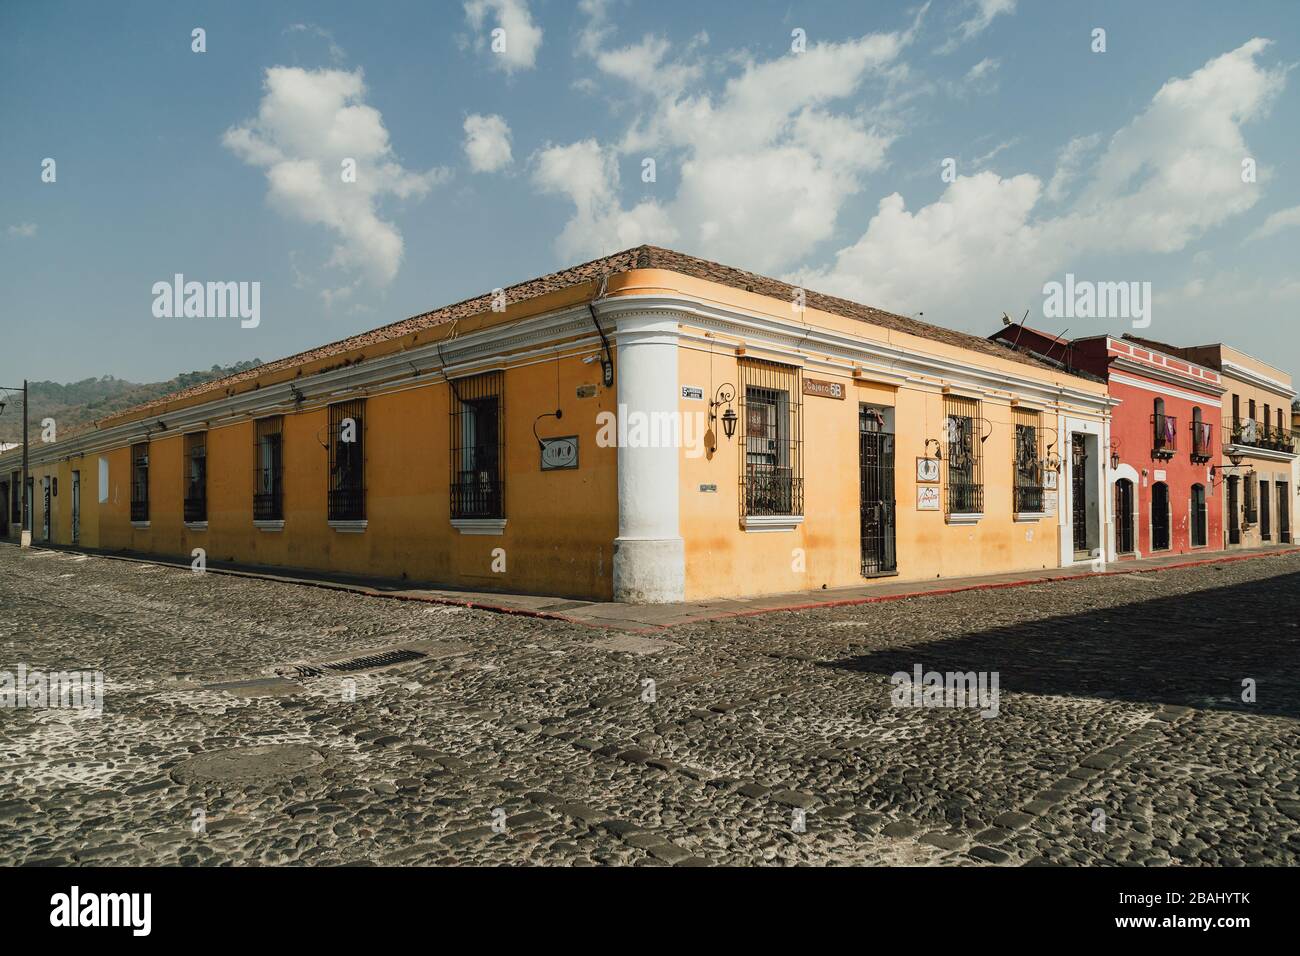 Les rues vides alors que le couvre-feu commence dans la colonie Antigua Guatemala, une destination touristique populaire, les entreprises fermées en raison de la quarantaine pandémique de coronavirus Banque D'Images